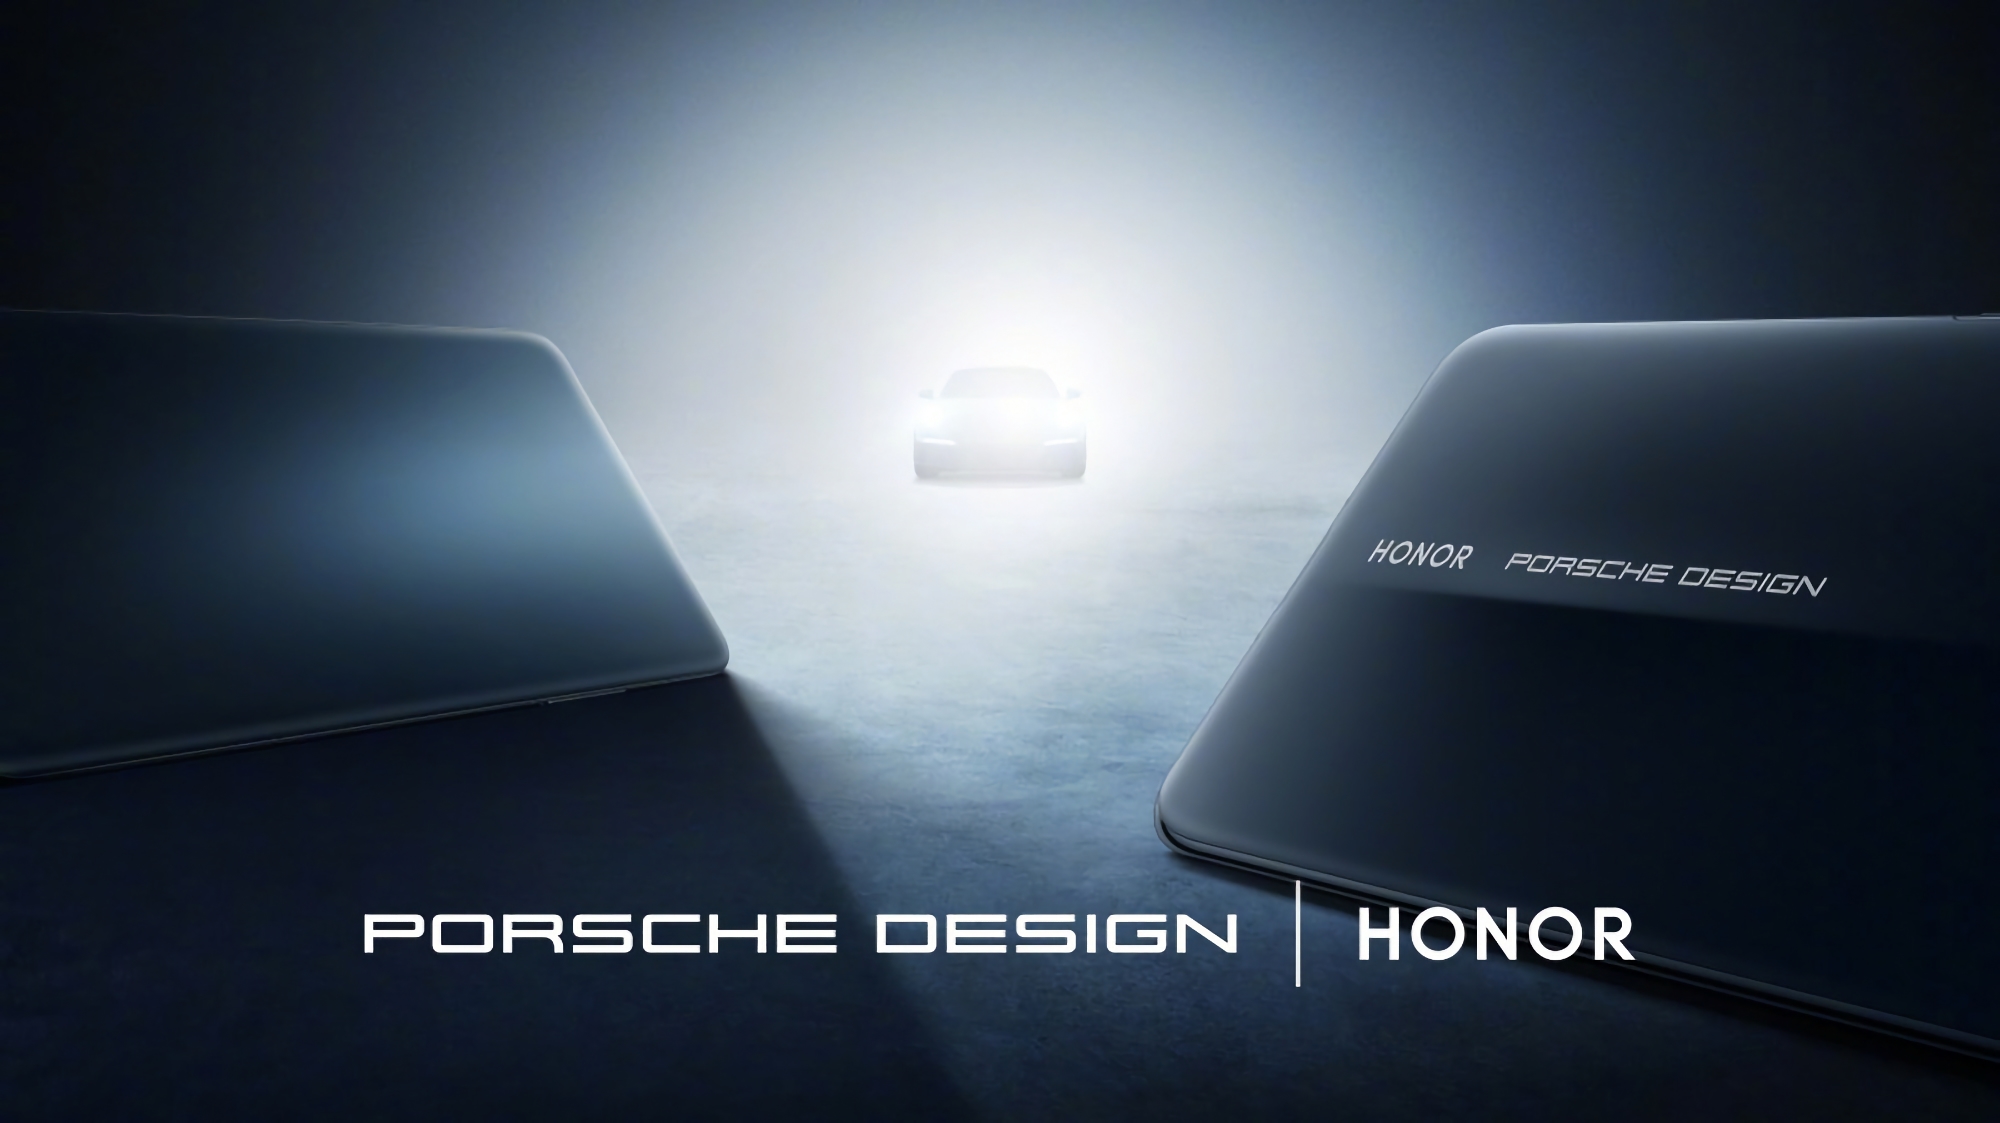 Det er officielt: Honor afslører Magic 6 RSR Porsche Design ved lanceringseventen den 18. marts